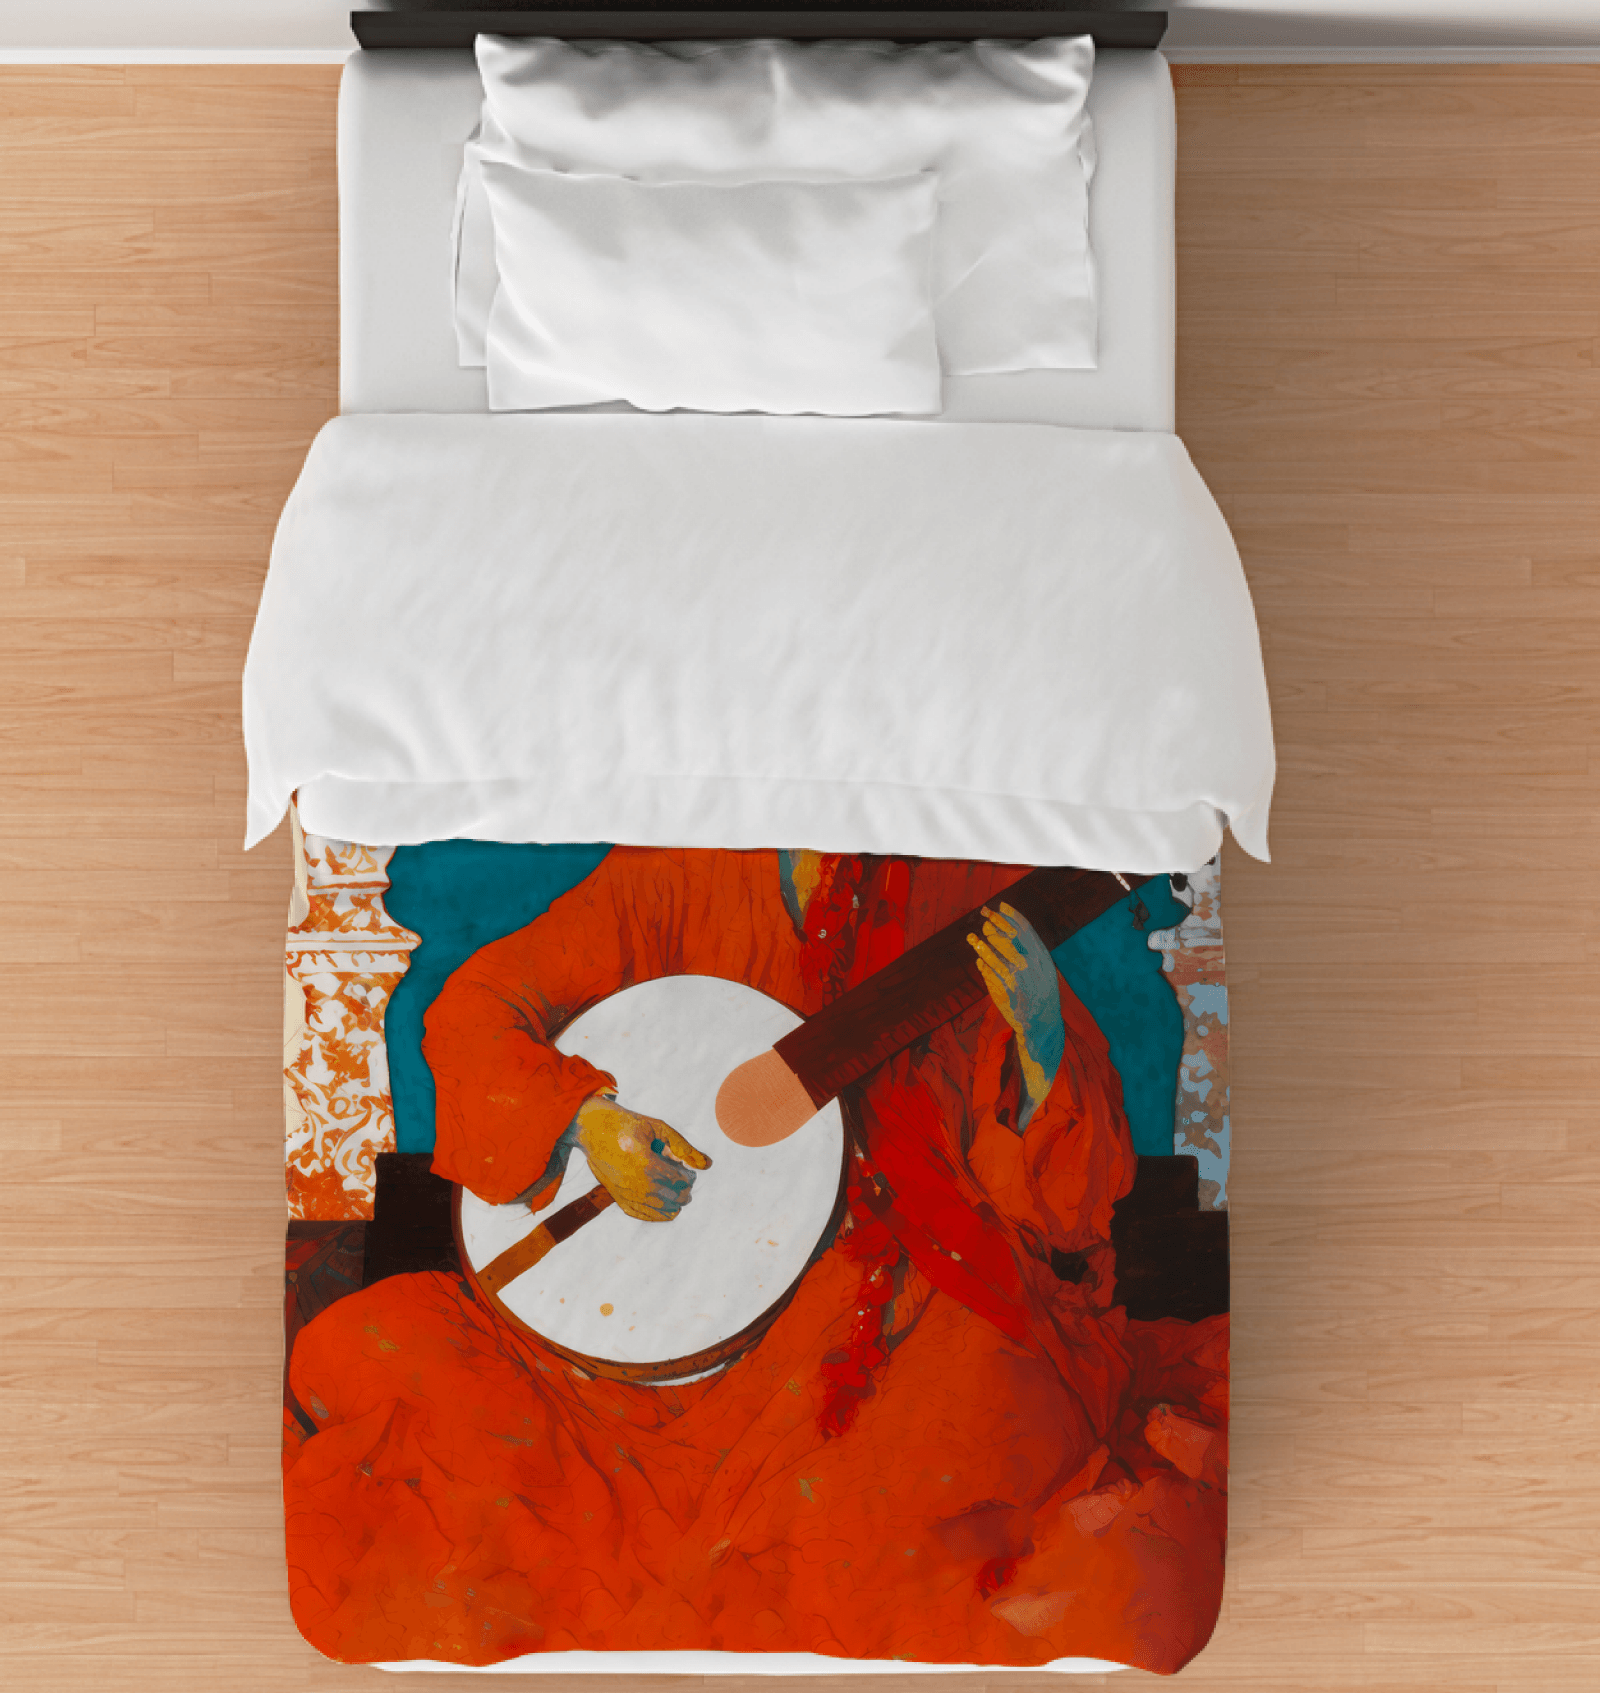 Luxurious NS 999 Duvet Cover for an elegant bedroom makeover